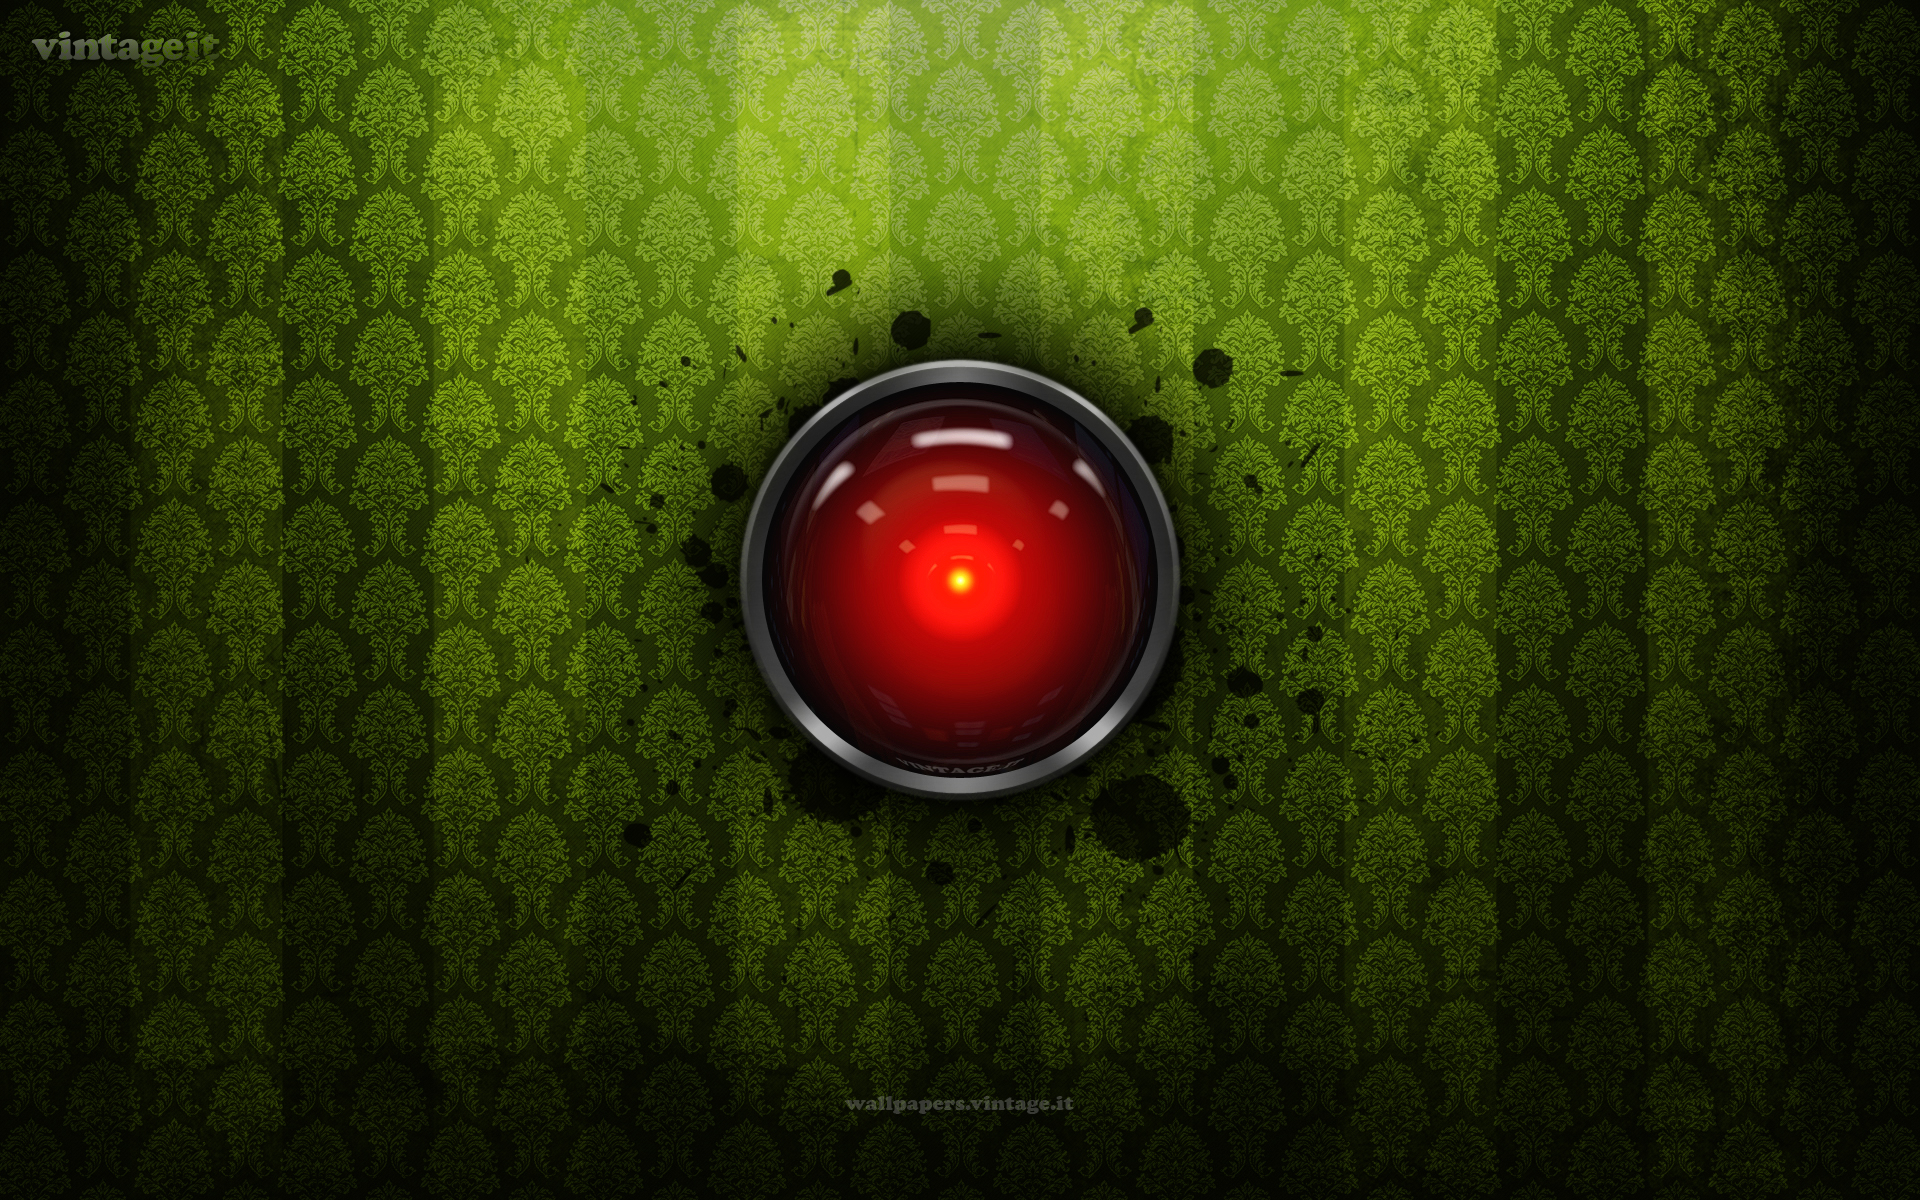 Hình nền Hal 9000 đầy đủ trí tuệ nhân tạo và bí ẩn của nó sẽ thôi thúc trí tò mò của bạn về thế giới công nghệ.